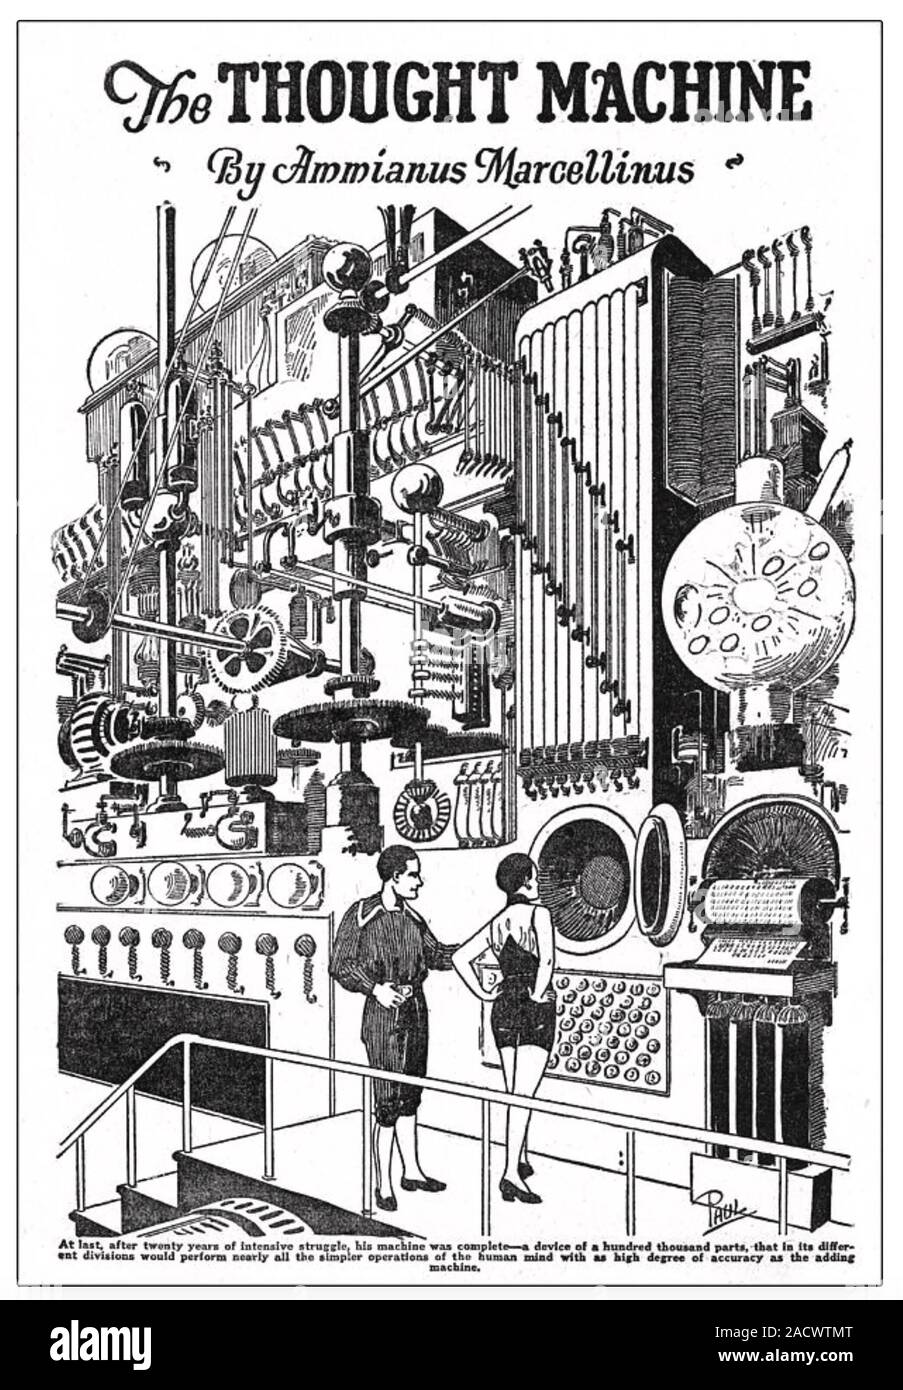 Il pensiero di una macchina 1921 Illustrazione di un immaginario mechanical computer chiamato dopo storico romano Ammianus Marcellino Foto Stock